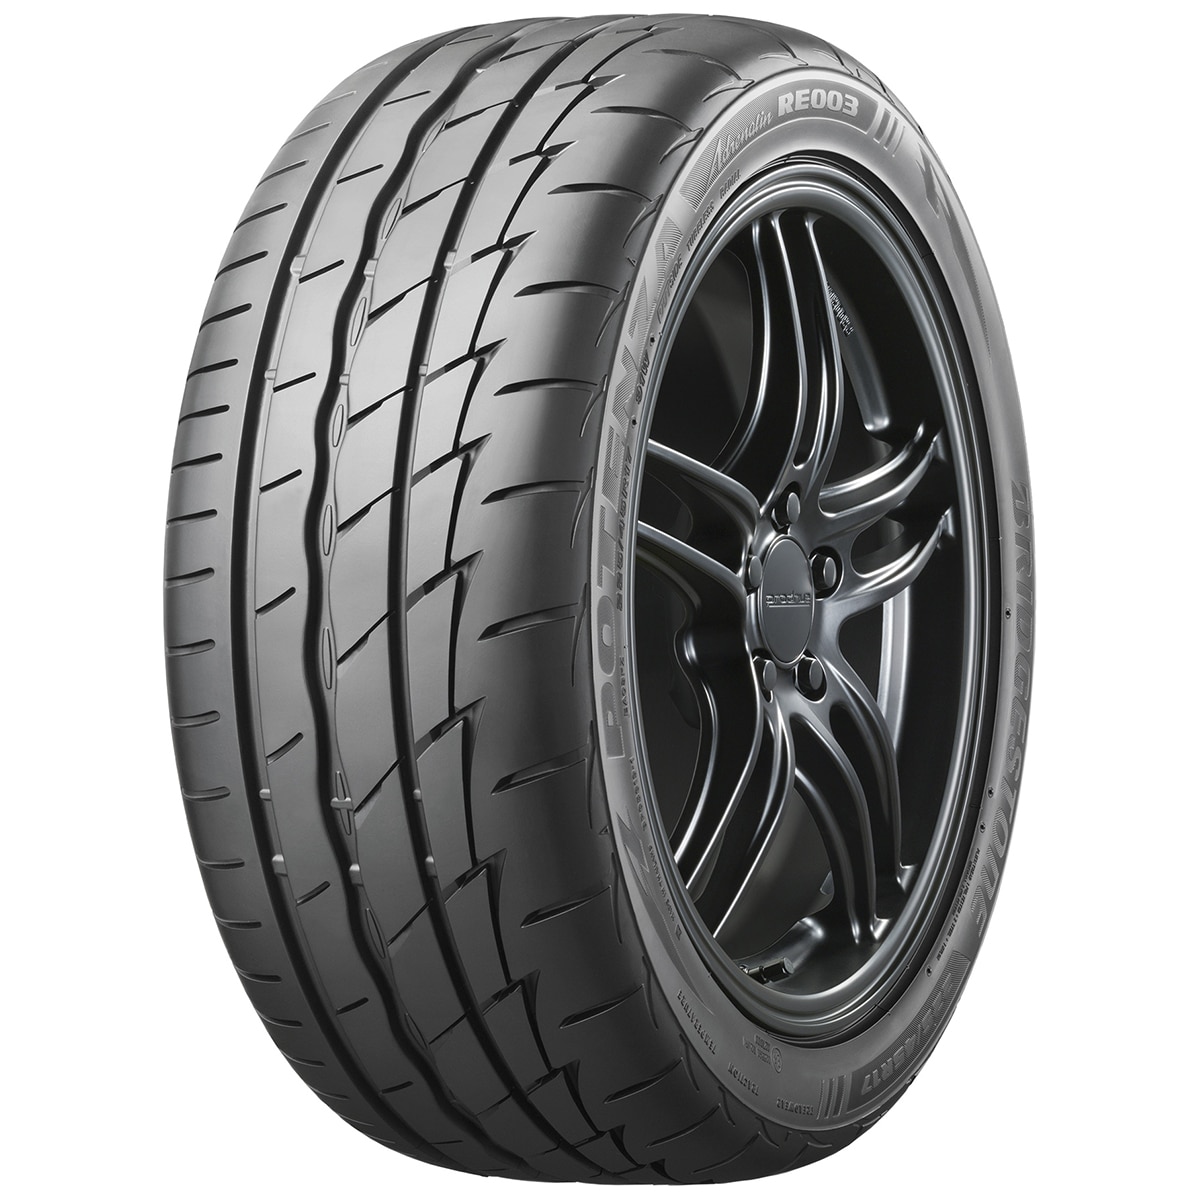 245/45R18 100W XL RE003 - Tyre